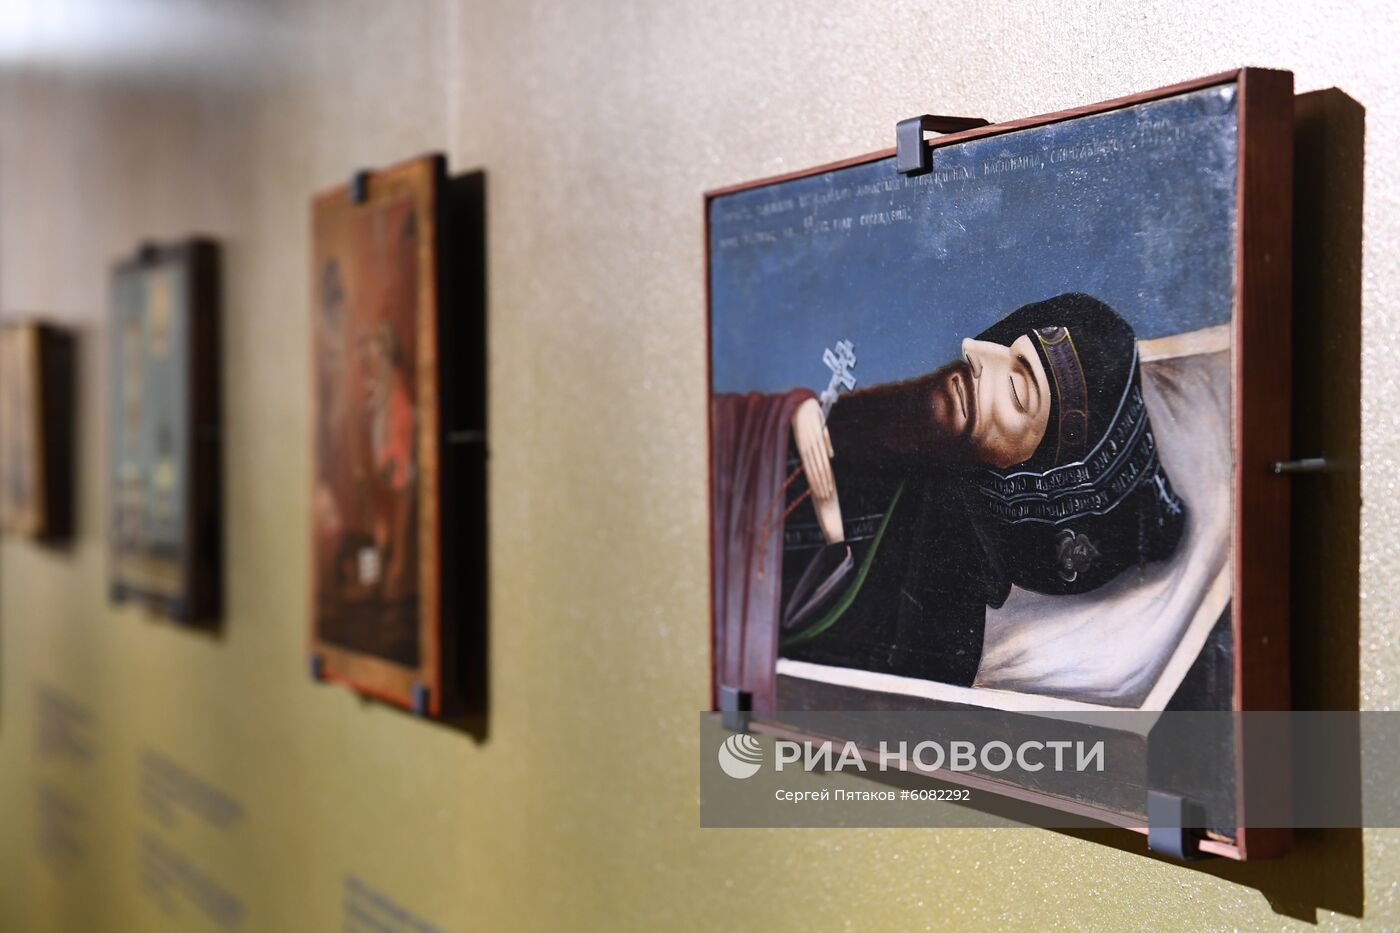 Выставка "Другое измерение. Смерть и загробная жизнь в христианском искусстве" в Москве